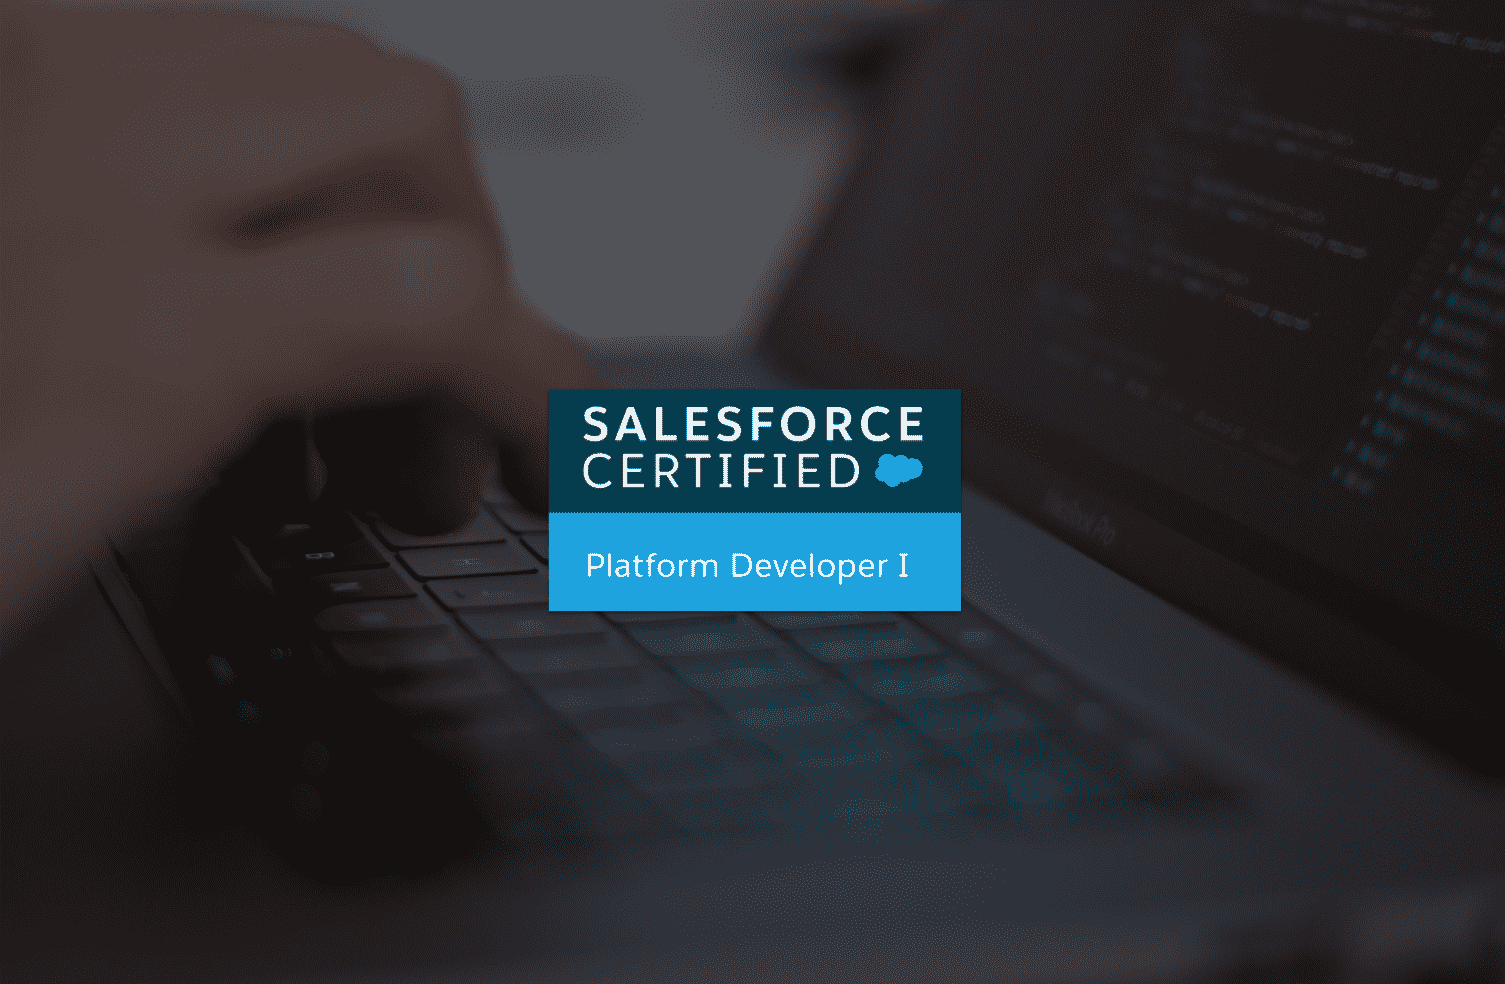 Salesforce Platform Developer I Certification